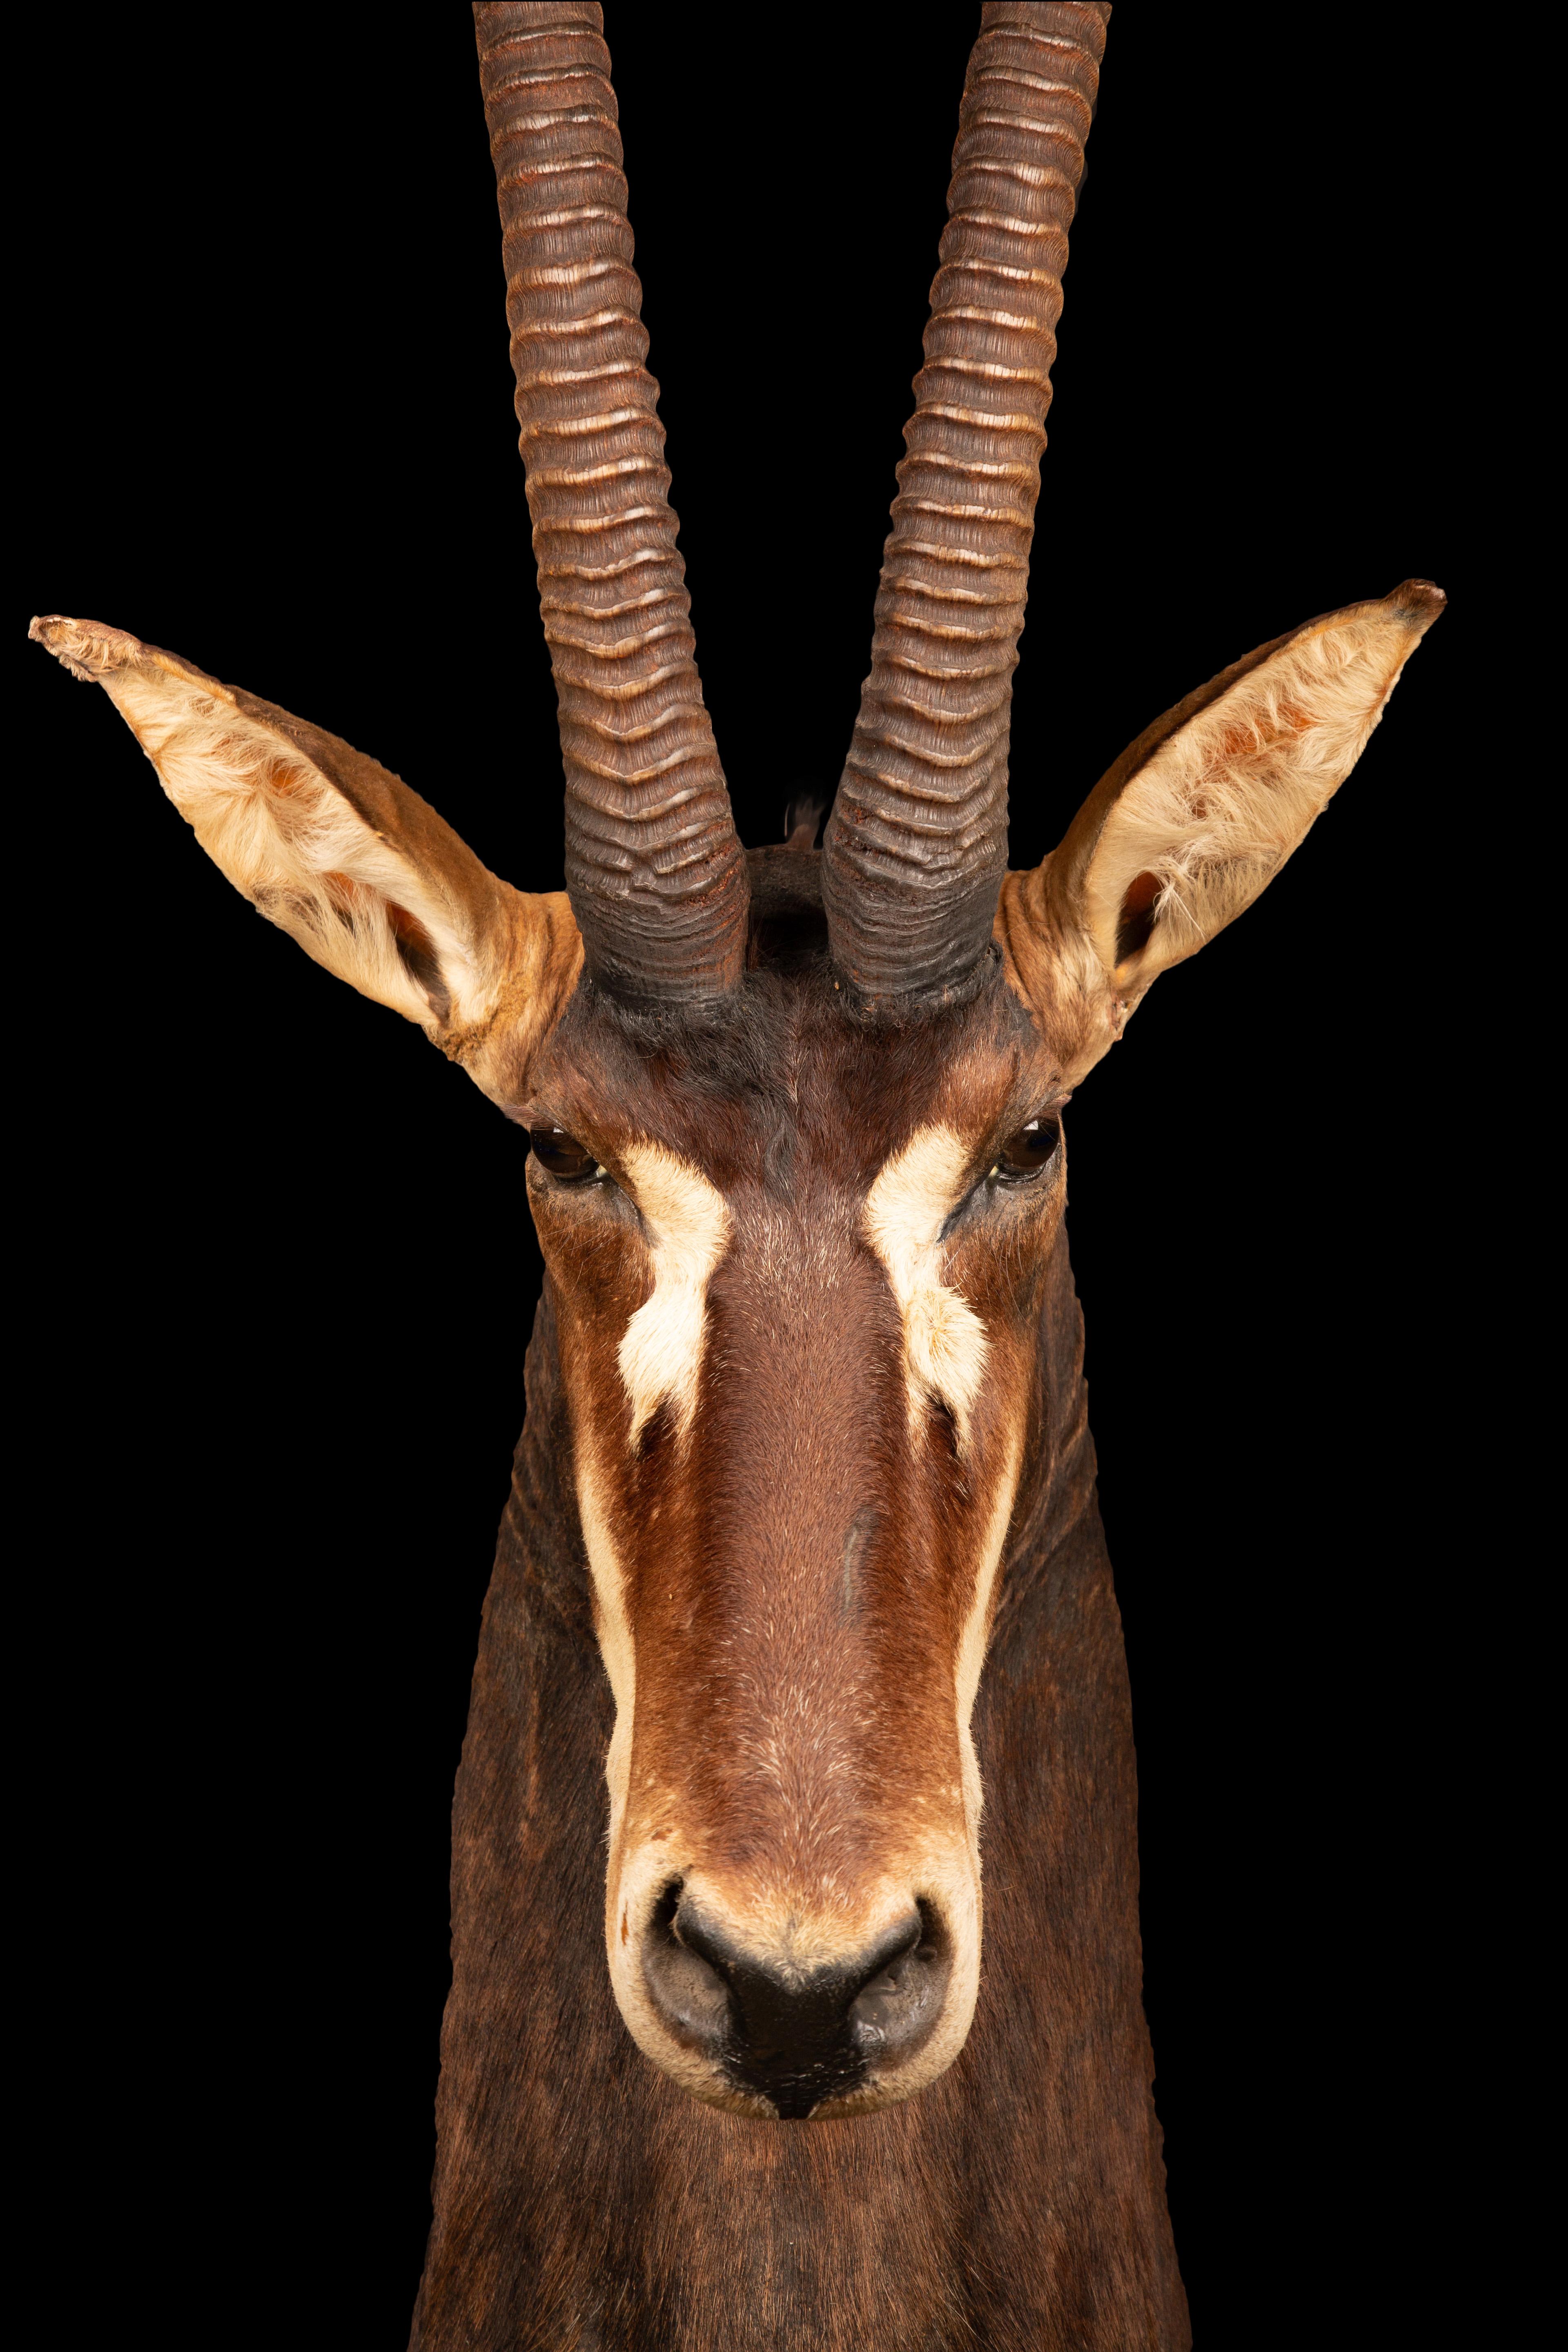 Ce spécimen exquis est une antilope charbonnière taxidermique montée sur table, fabriquée de manière experte et magnifiquement conservée. L'antilope charbonnière est une espèce étonnante qui habite les savanes boisées de l'Afrique de l'Est et de